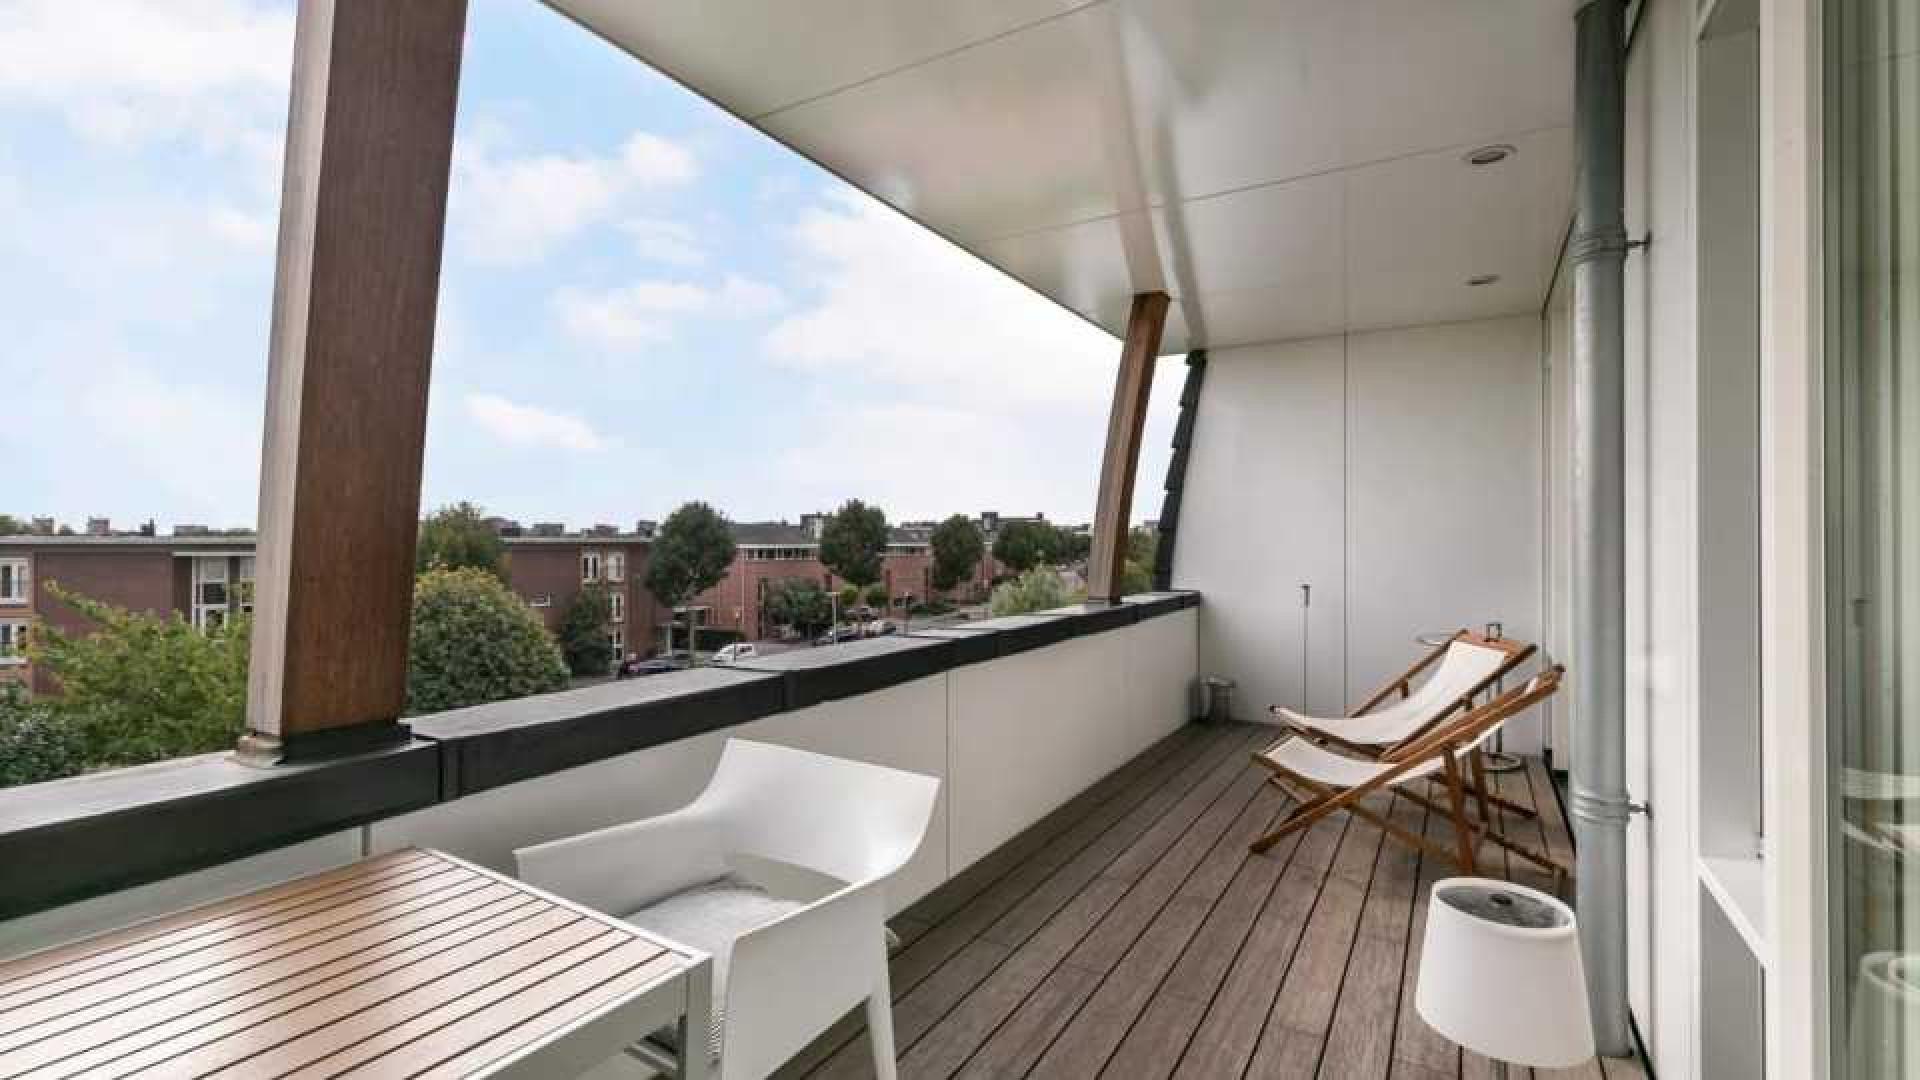 Binnenkijken in het waanzinnig luxe penthouse van Nederlands Elftal speler Denzel Dumfries. Zie foto's